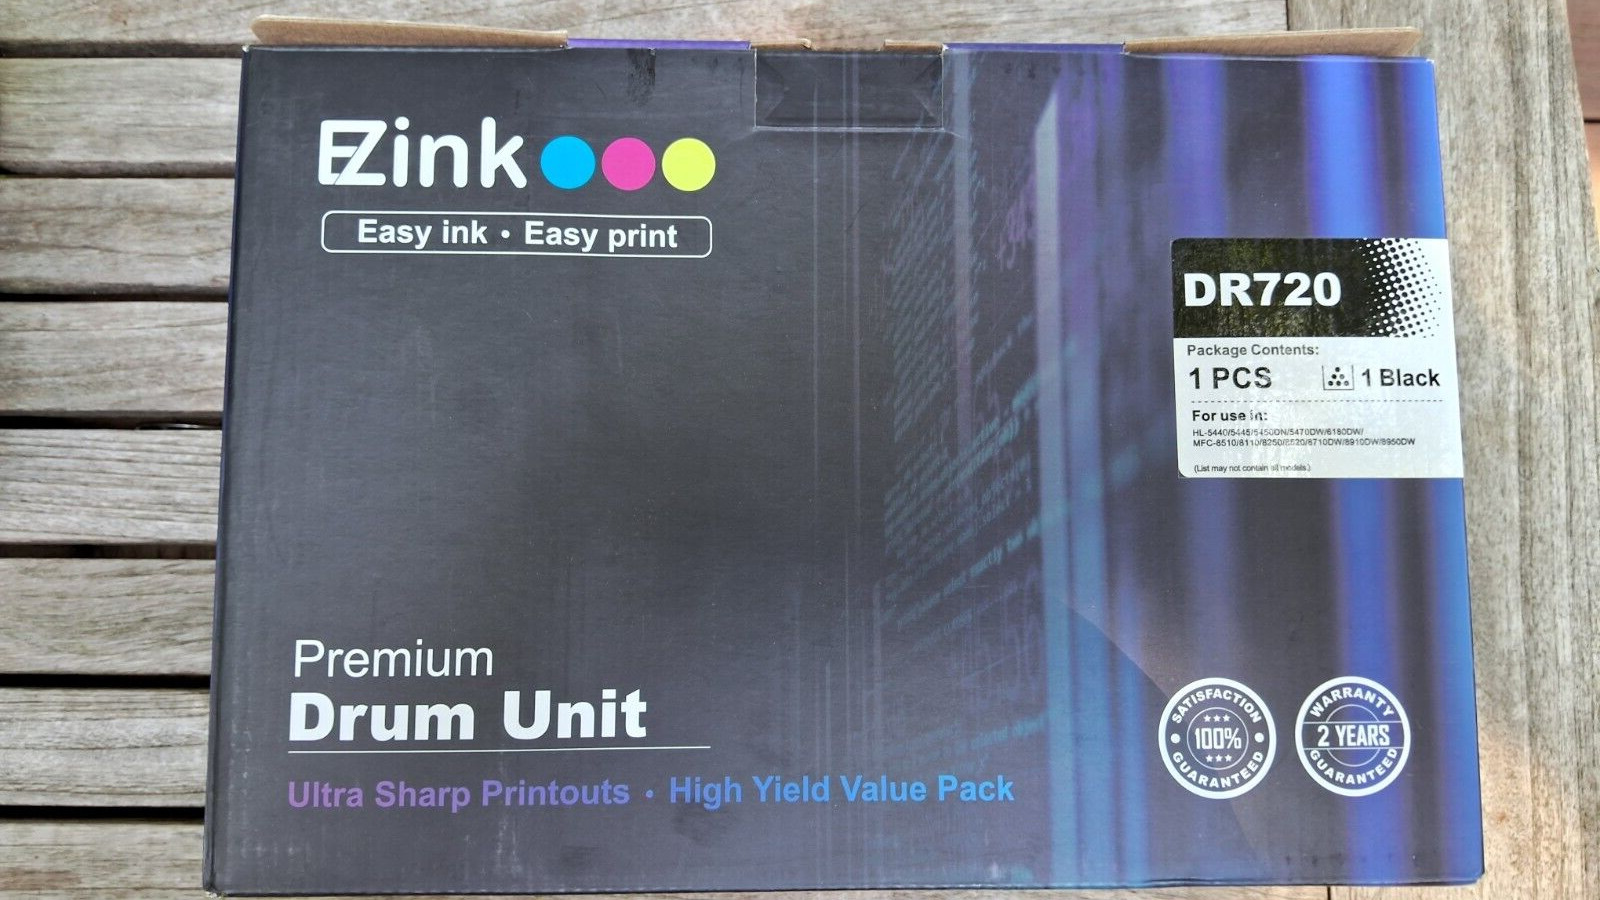 EZink DR720 Premium Drum Unit